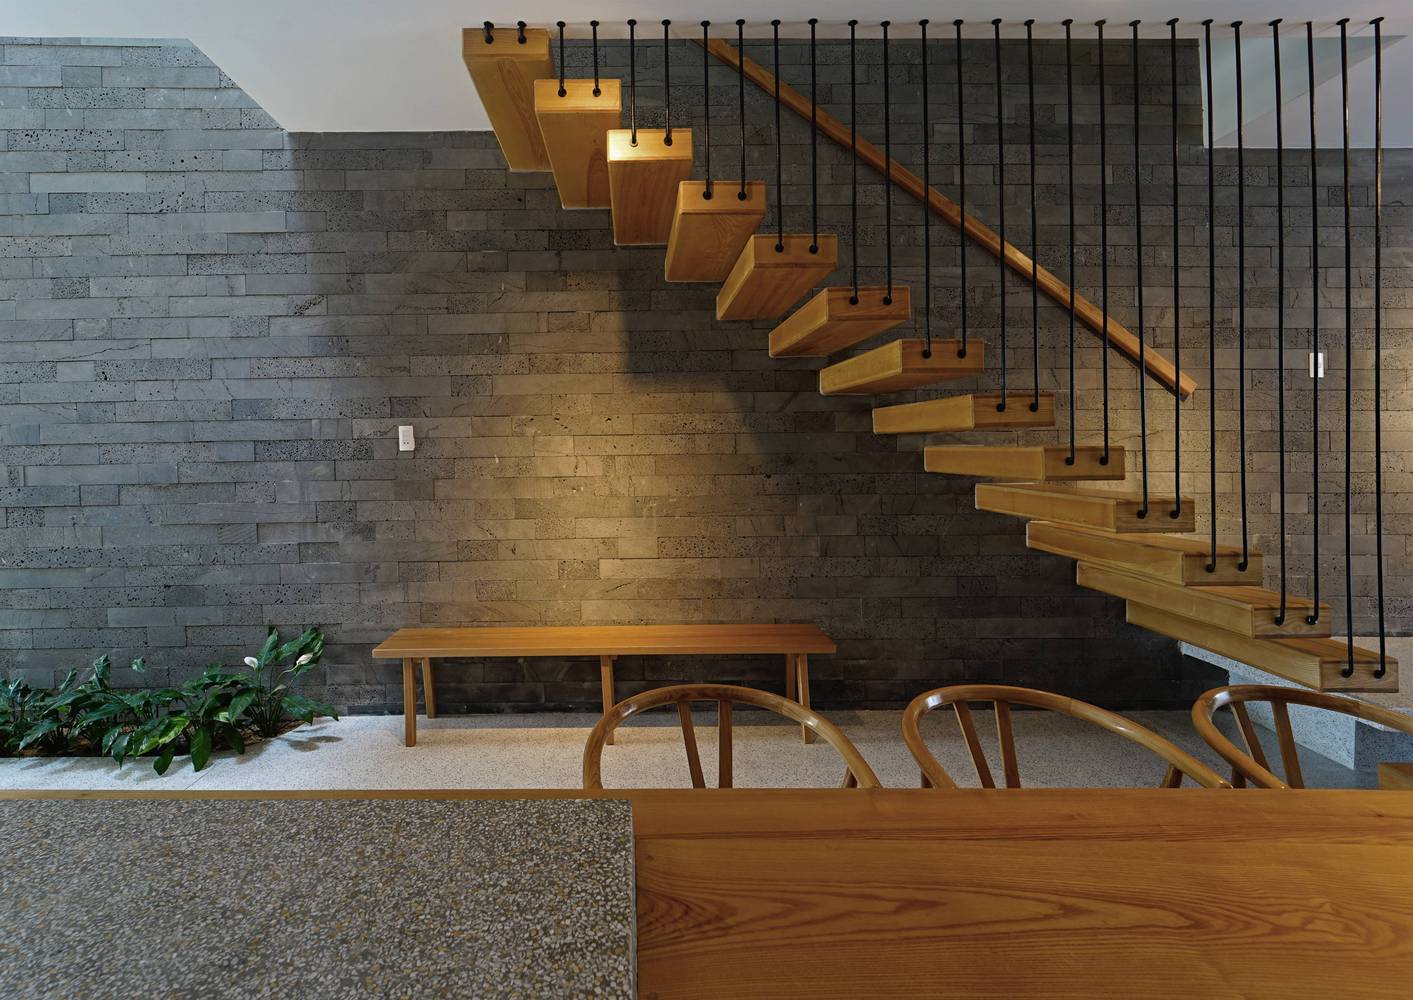 hình ảnh khu vực cầu thang gỗ bậc hở trong nhà đẹp, cây xanh, tường ốp đá bê tông xám, bàn ăn gỗ đặt bên cạnh